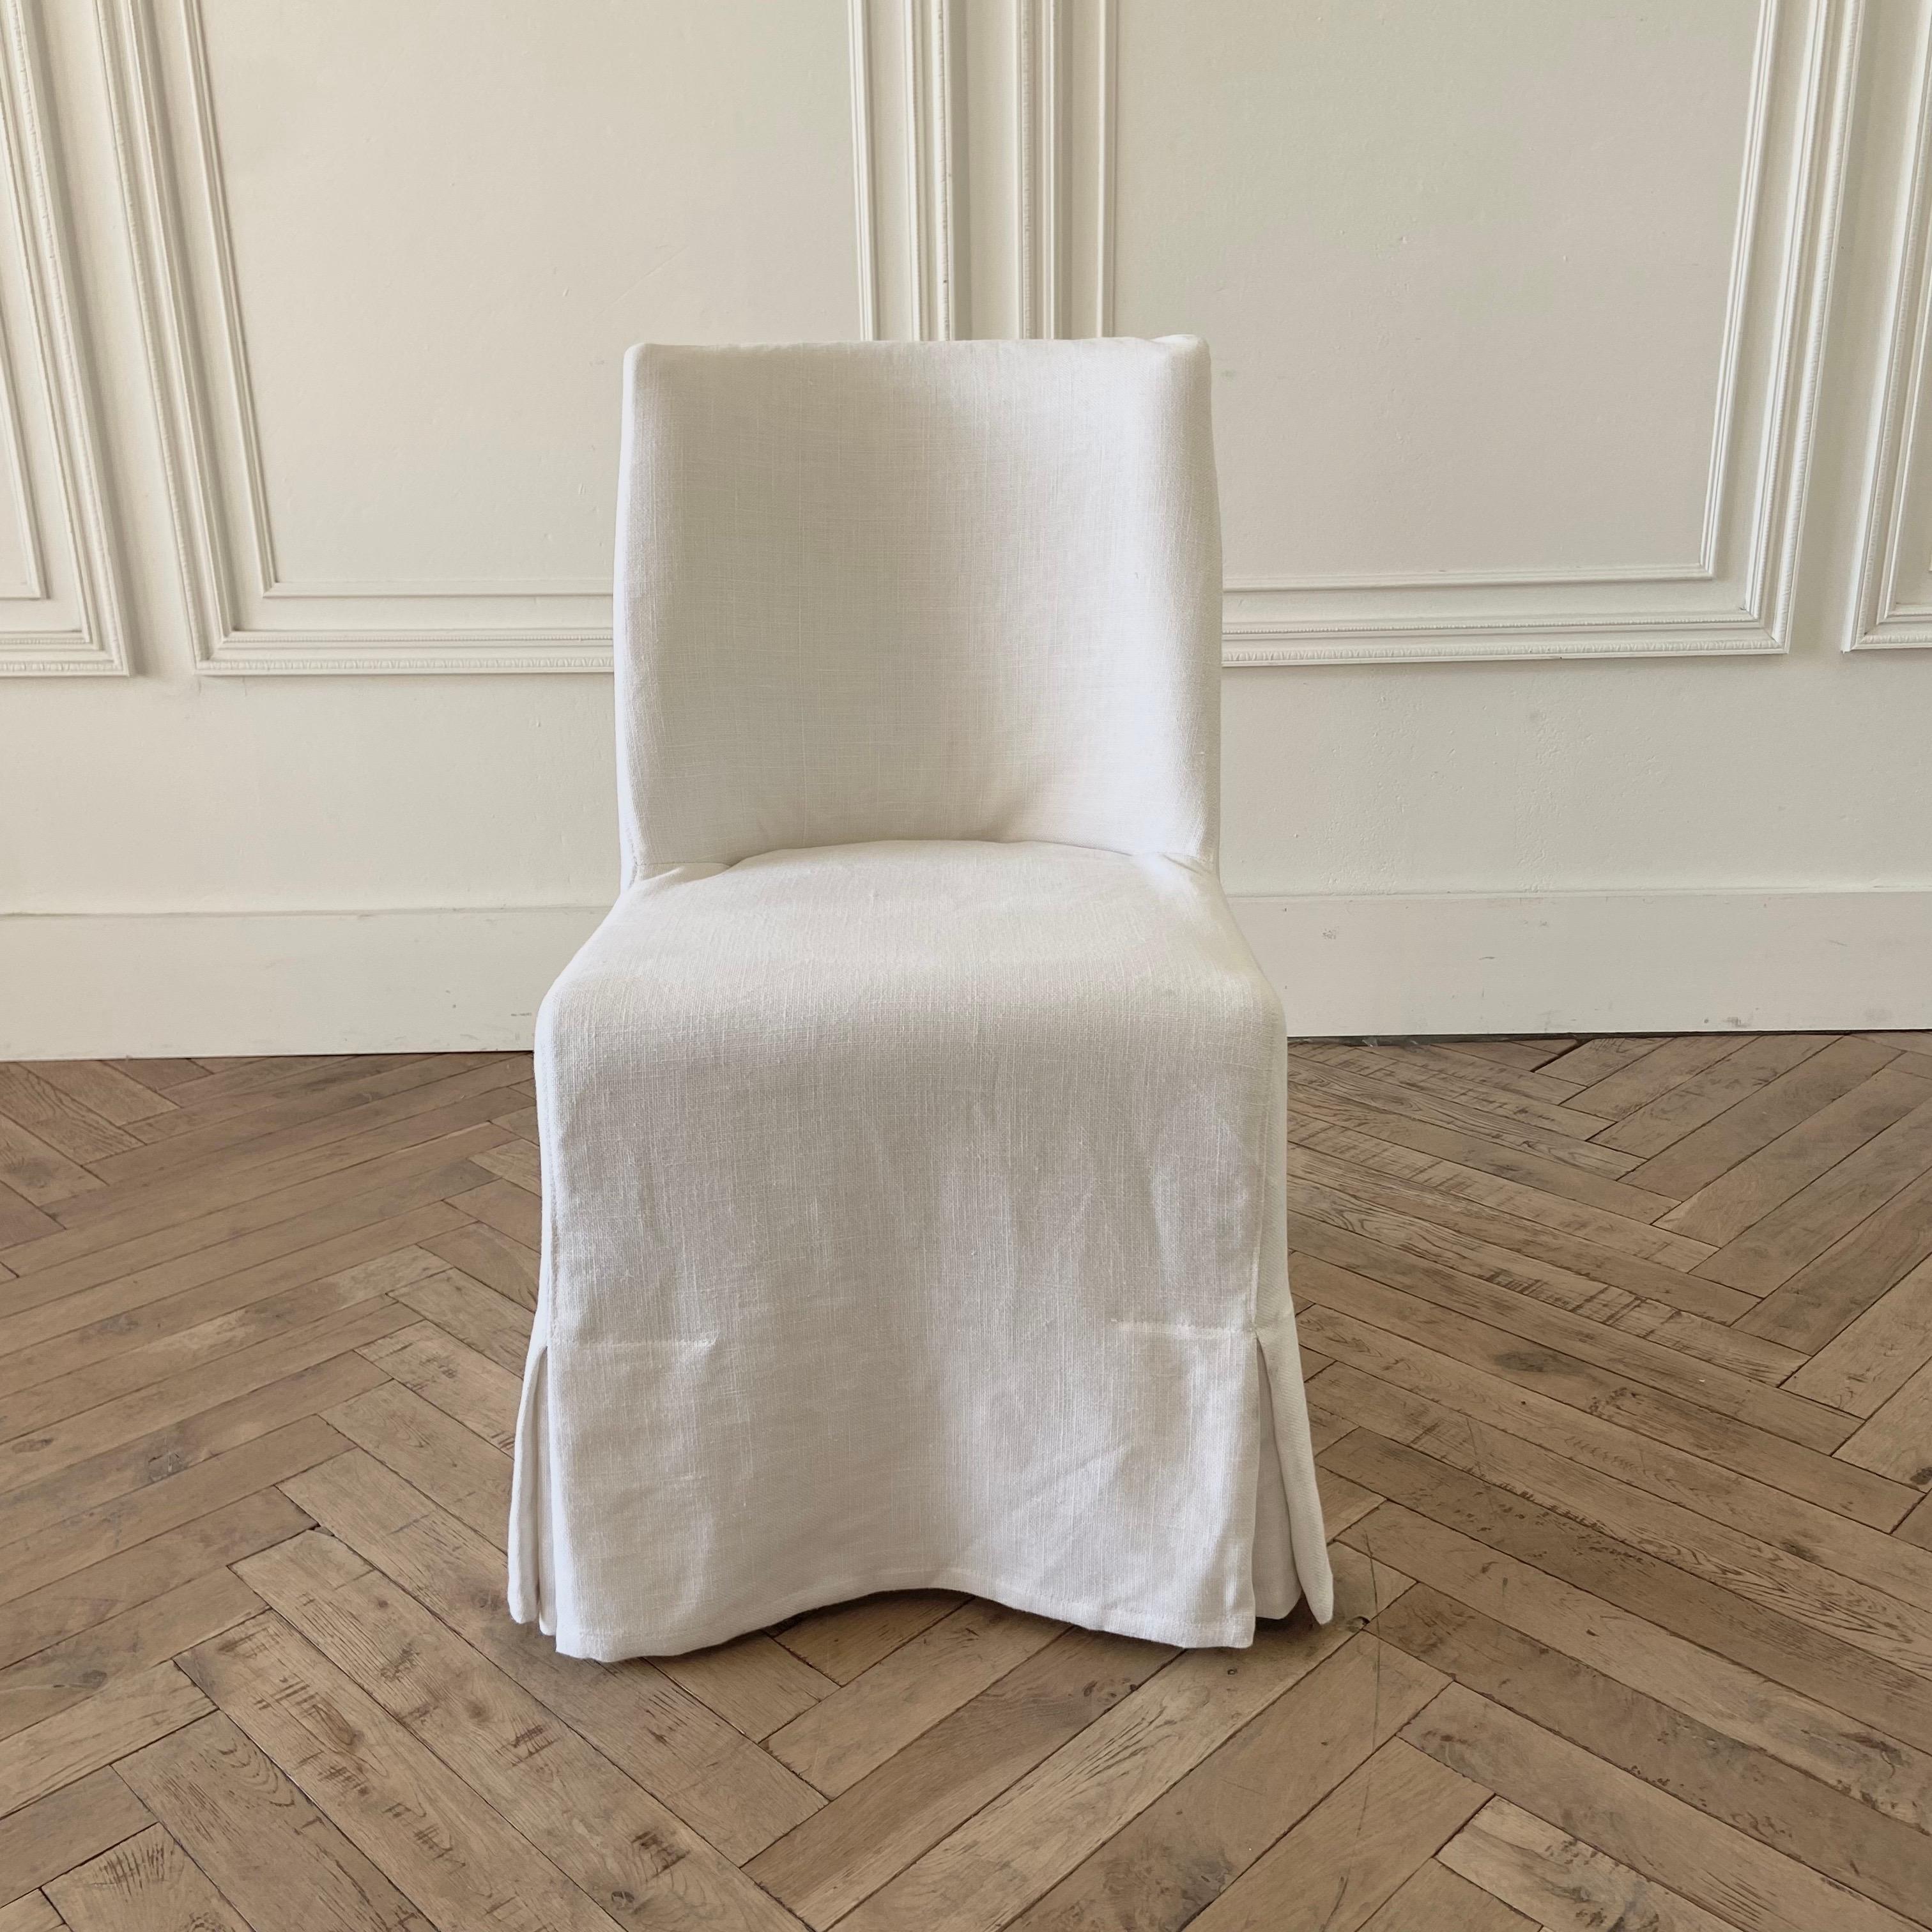 Chaise à manger recouverte de lin blanc
Chaise de pasteur simple et lourde, recouverte de lin blanc.
Si le produit n'est pas disponible en stock, veuillez prévoir un délai de 2 à 4 semaines.
Taille : 19